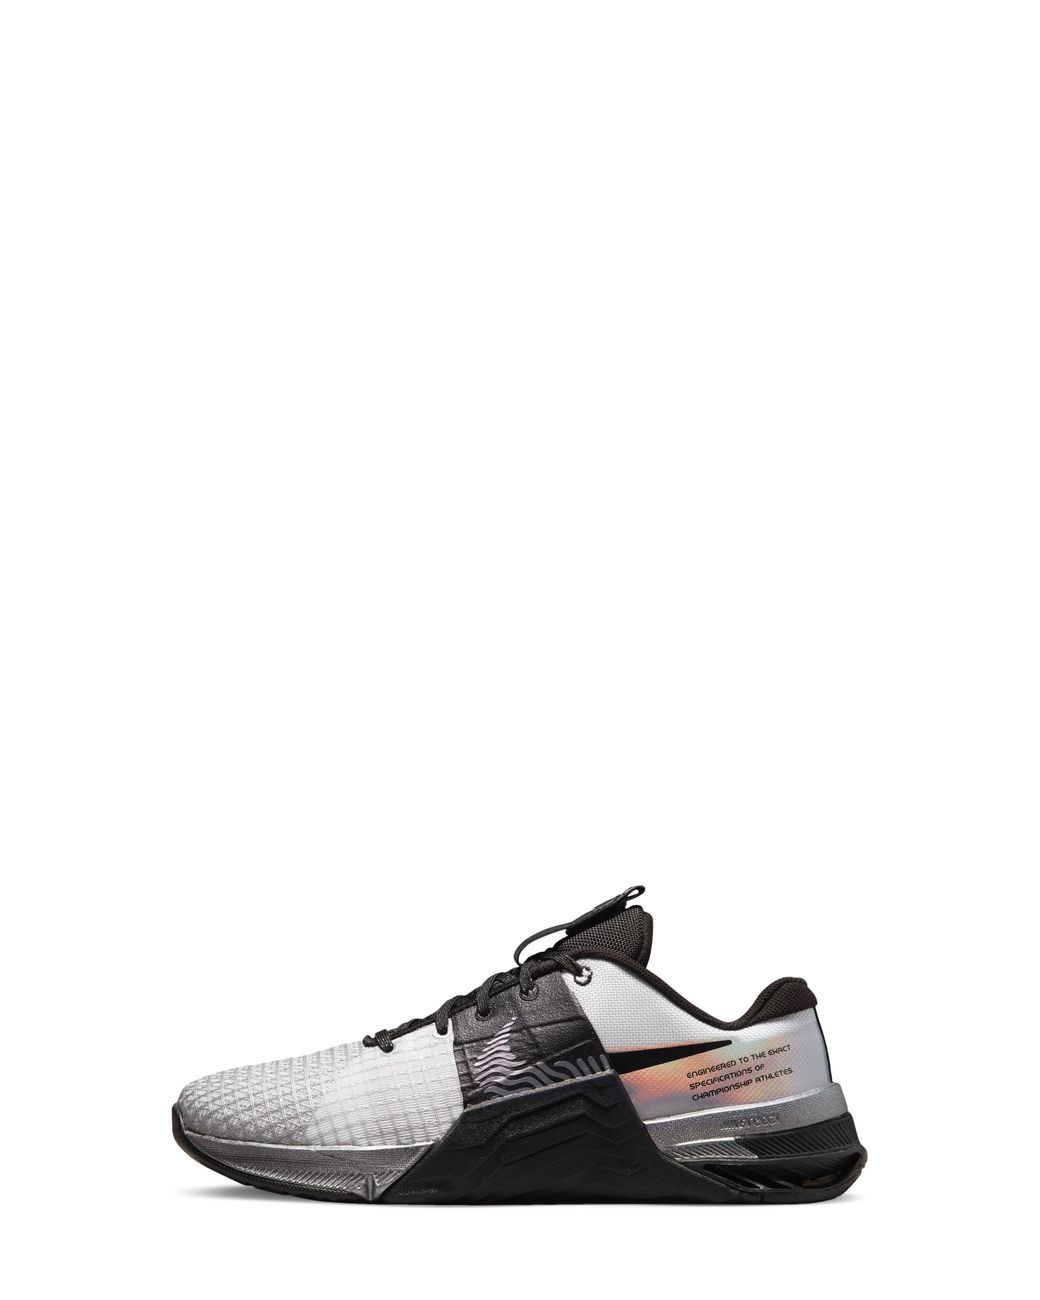 Nike Metcon 8 Premium Training Shoe in Black | Lyst